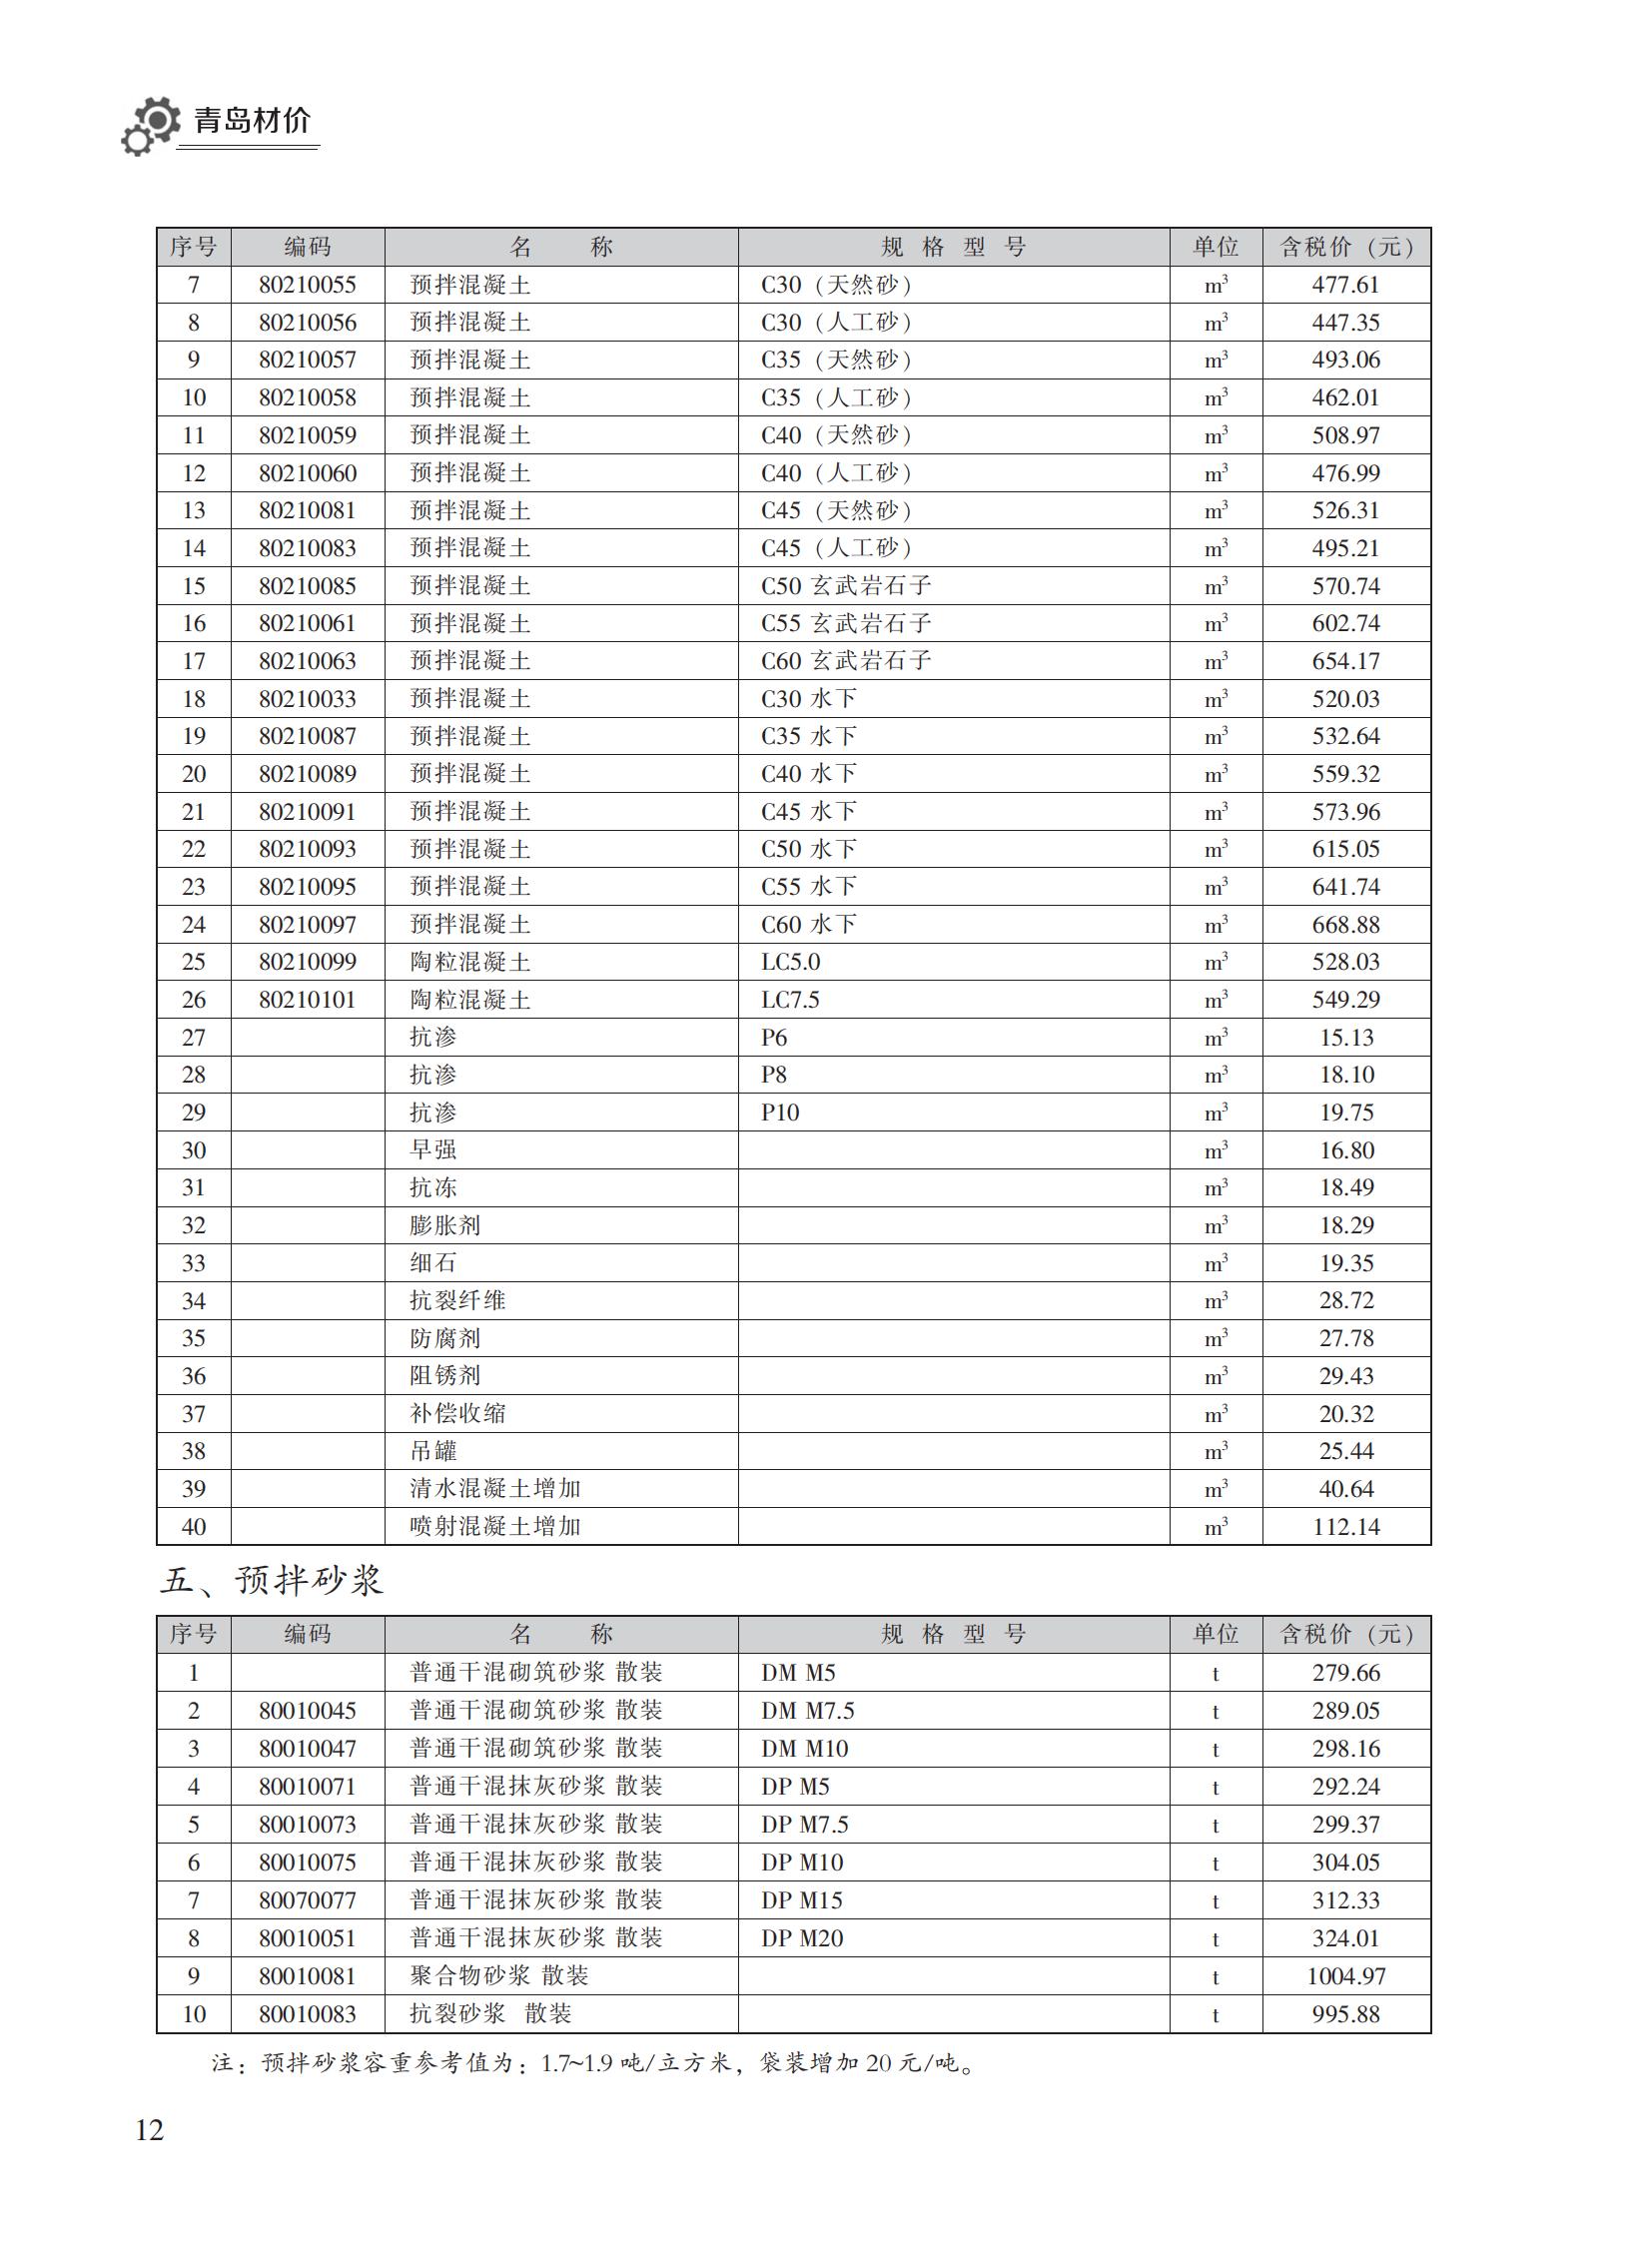 2023年11月青岛市建设工程材料价格及造价指数_11.jpg